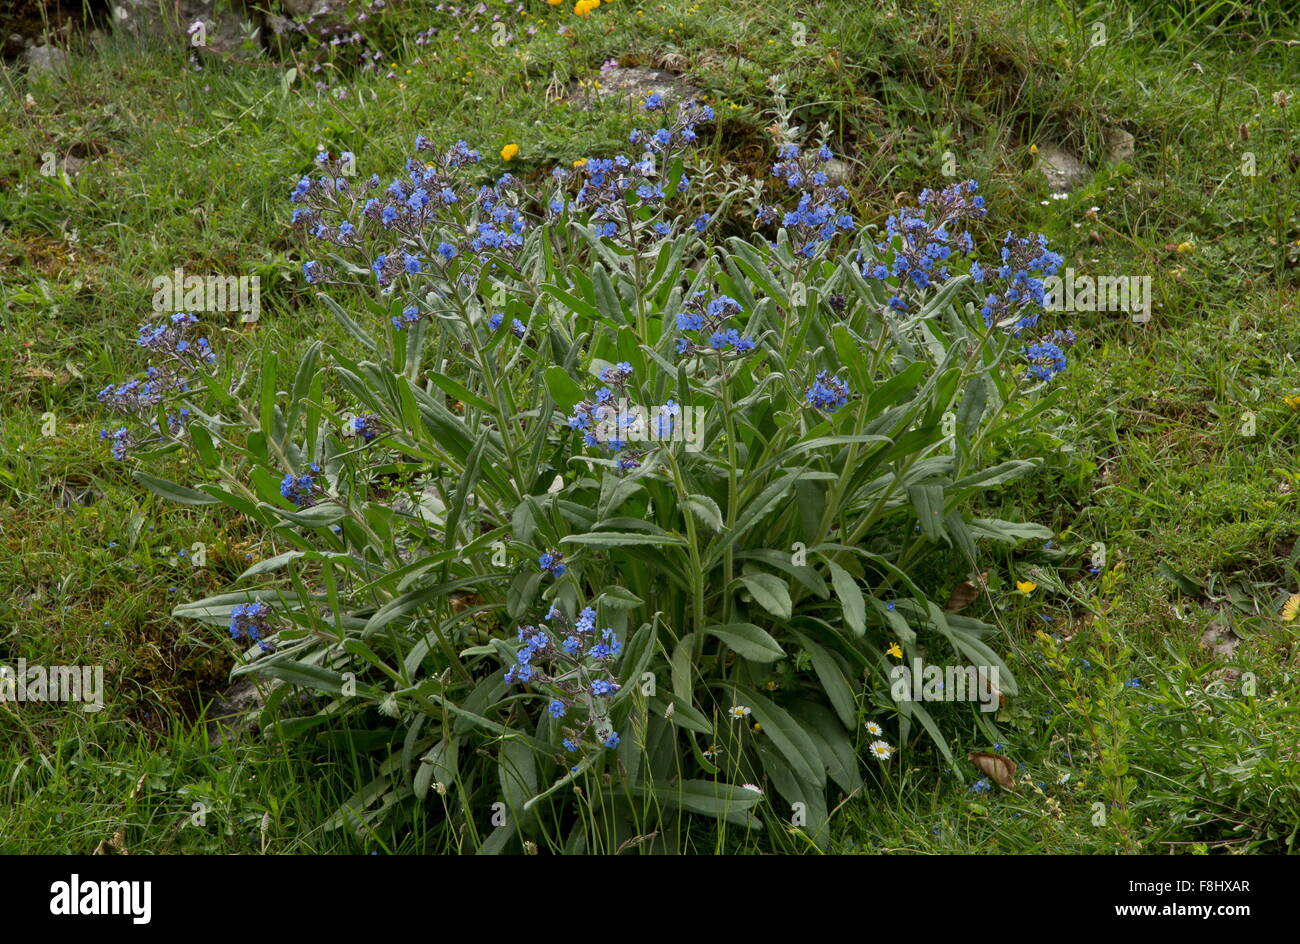 Barrelier's bugloss, or false alkanet, Cynoglottis barrelieri, in grassland, Abruzzo, Italy. Stock Photo